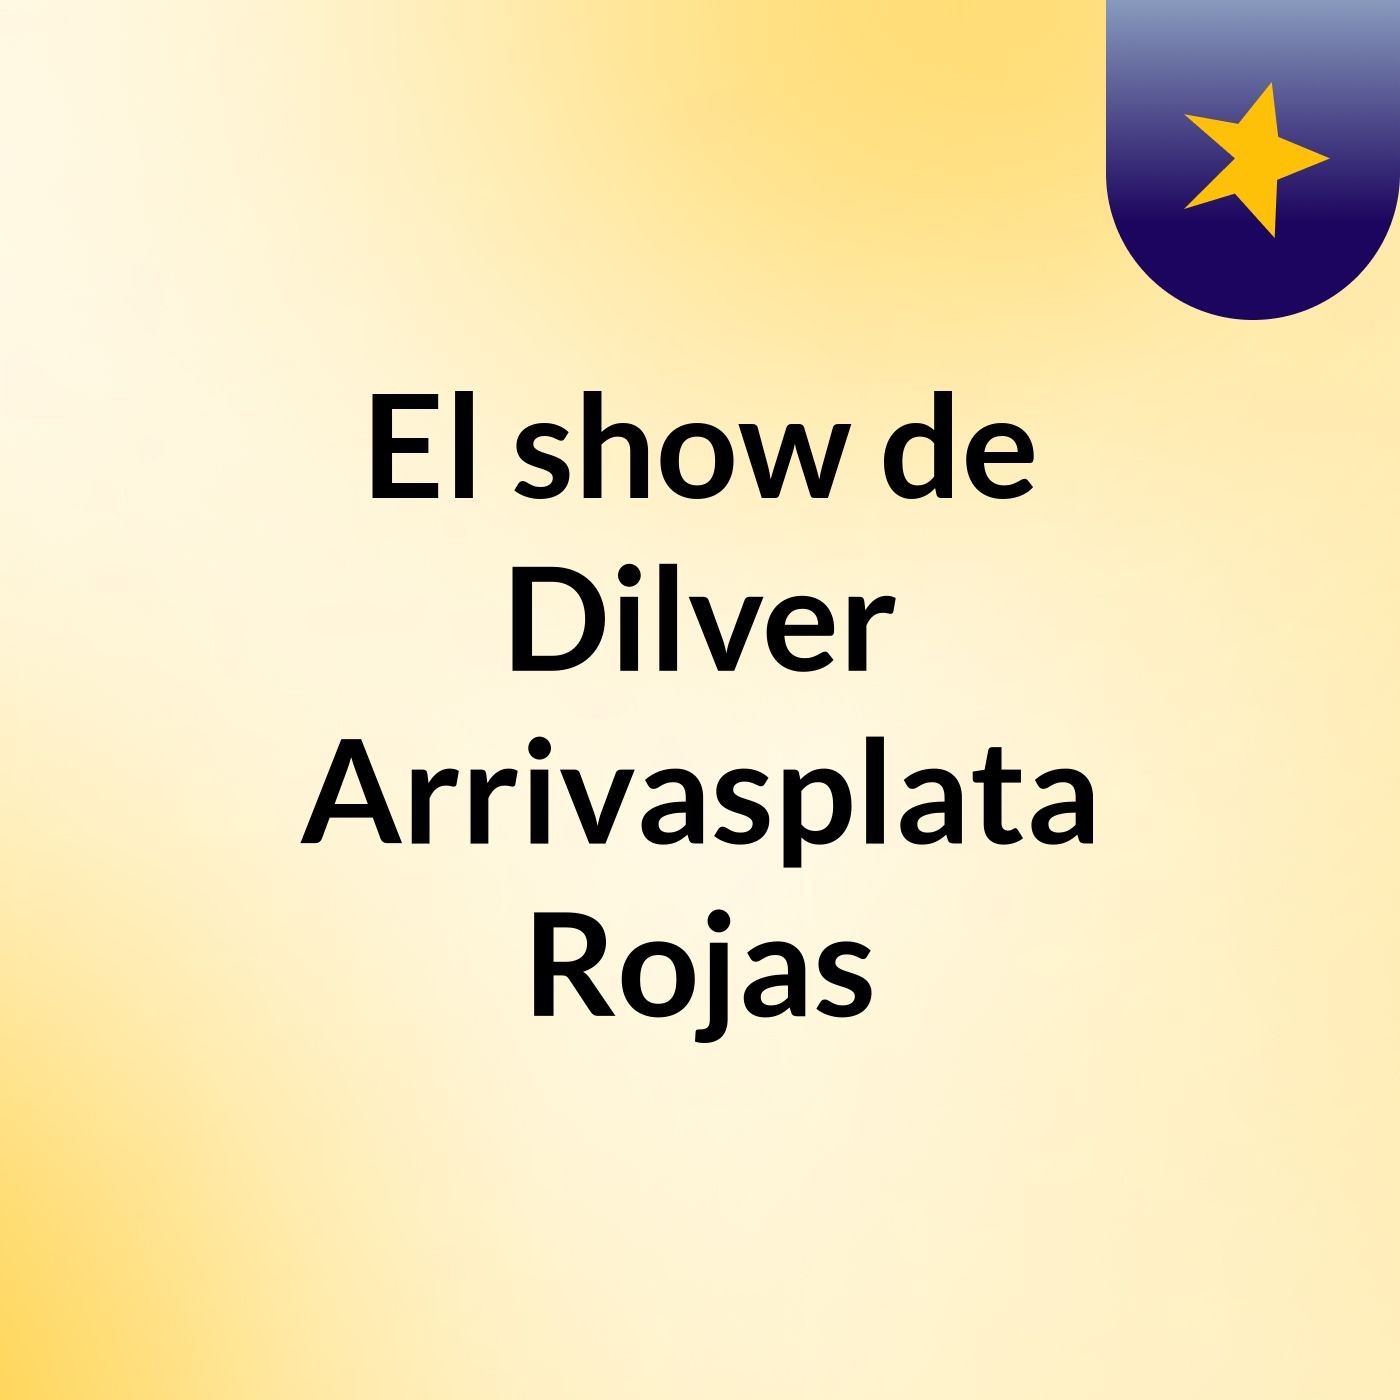 El show de Dilver Arrivasplata Rojas